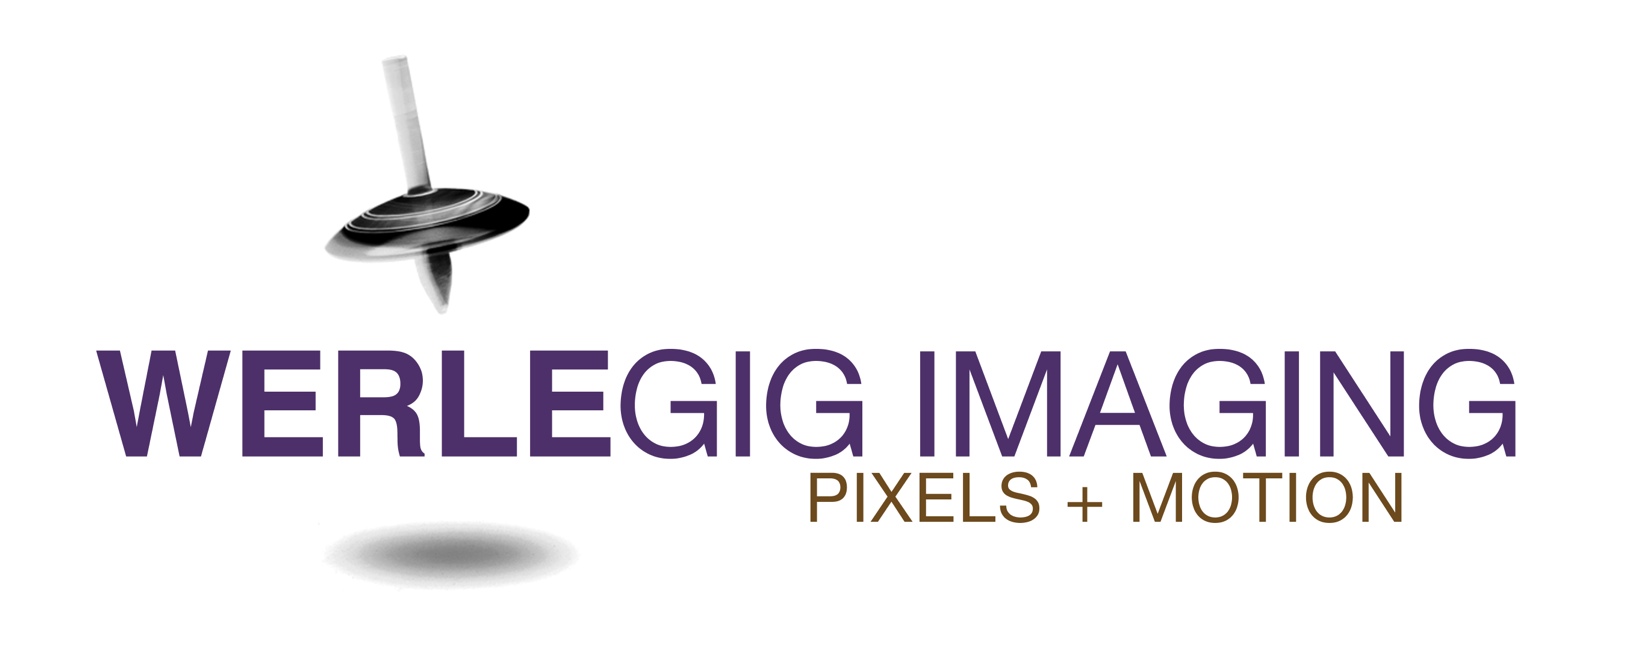 Werlegig Imaging Inc.